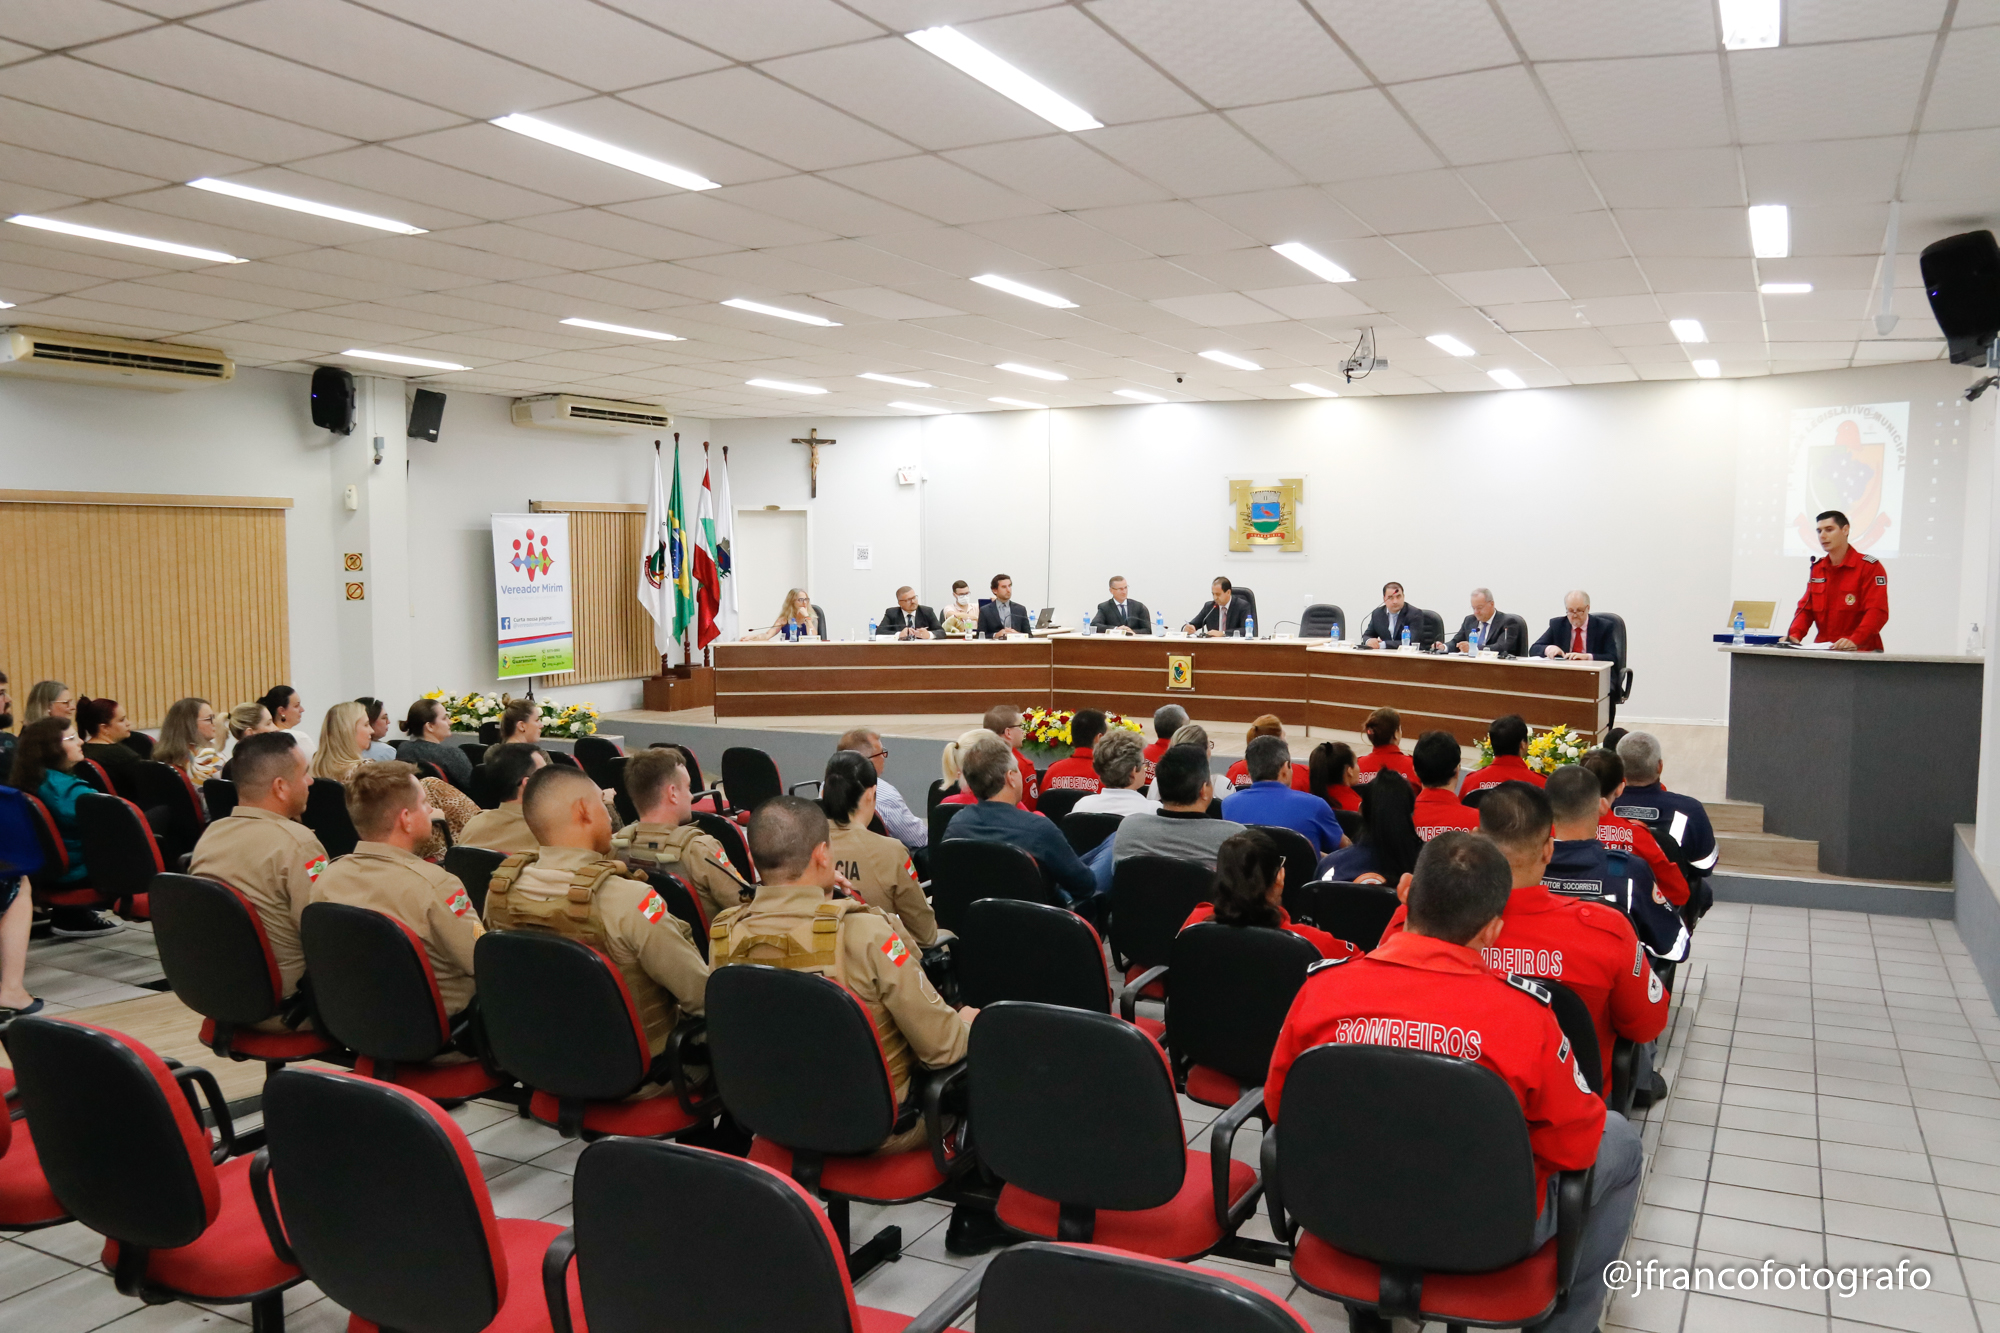 Câmara de Vereadores presta homenagem aos profissionais que combateram a Covid-19 em Guaramirim